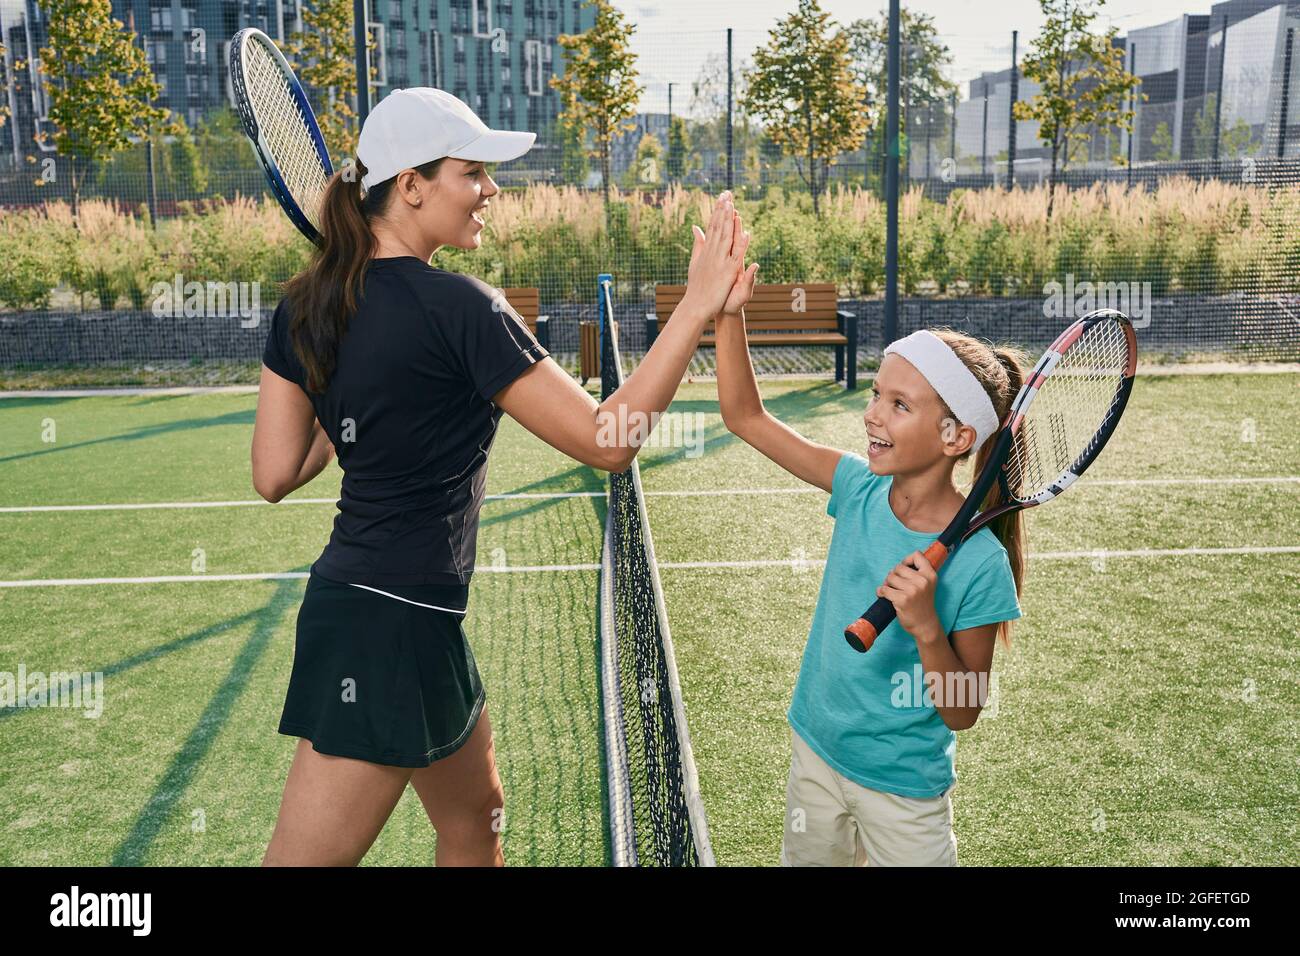 Das Kind gibt ihrem Trainer fünf, nachdem er Tennis gespielt hat. Tennistraining für Kinder auf dem Freiluftplatz Stockfoto